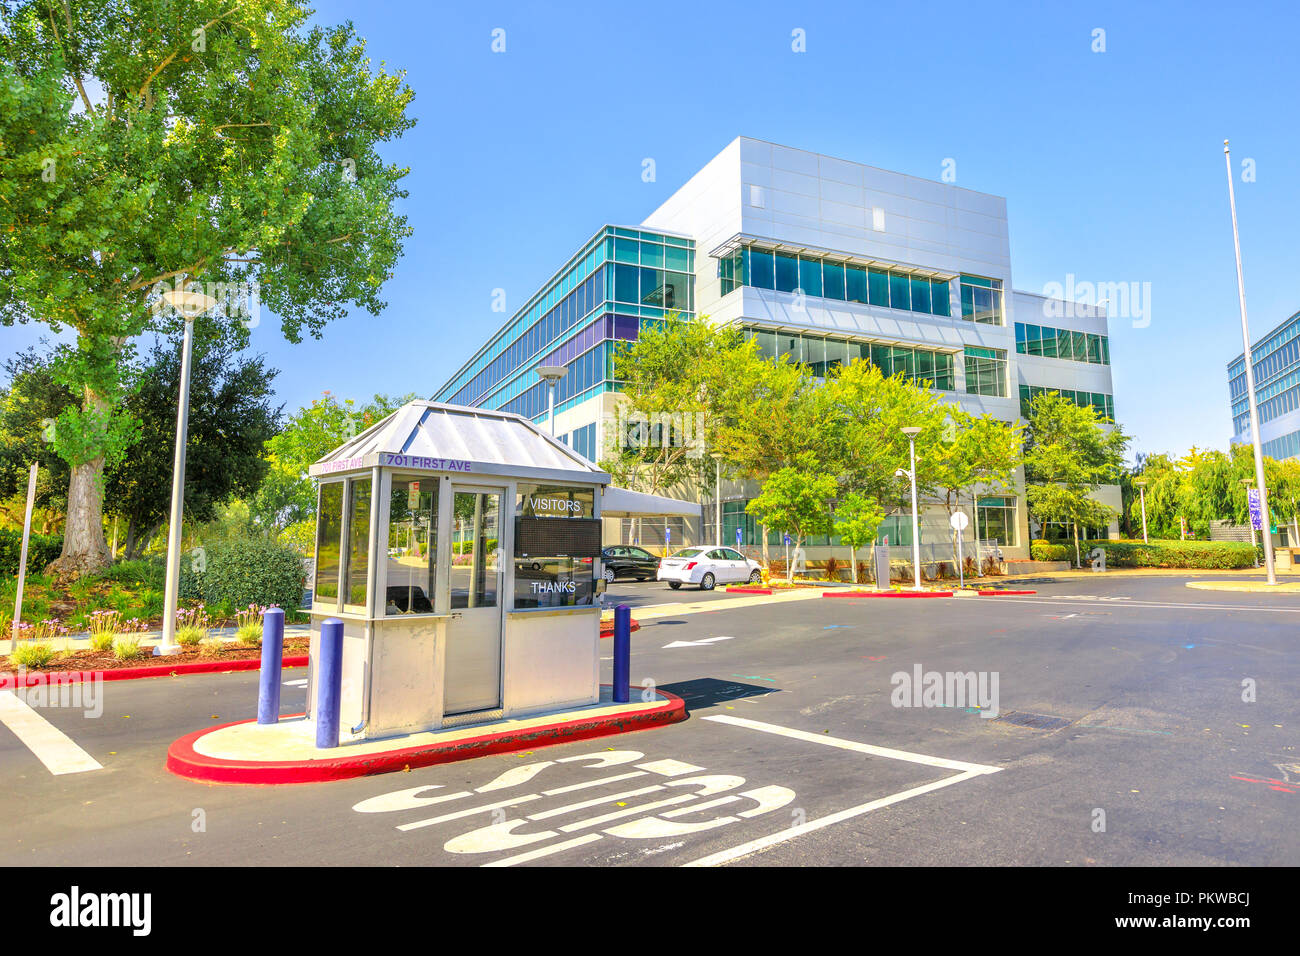 Sunnyvale, Kalifornien, USA - 12. August 2018: Yahoo Security Checkpoint Eingang bei Yahoo Inc Headquarters Campus, 701 1st Ave, Silicon Valley. Yahoo ist einer der wichtigsten Suchmaschine Portale Stockfoto